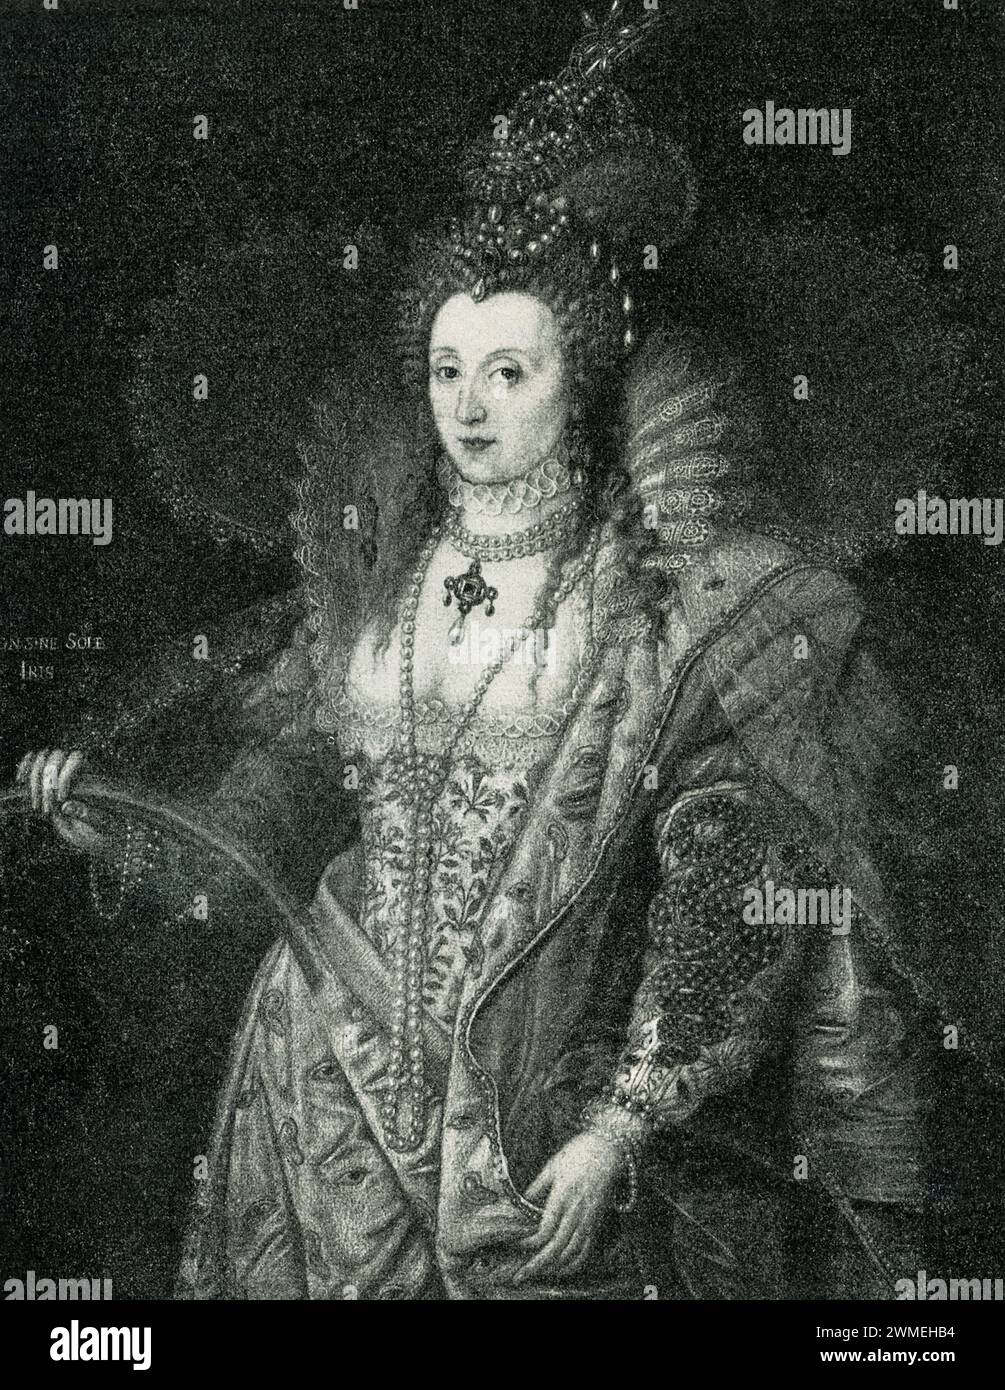 Ici Élisabeth Ire d'angleterre est représentée comme symbolisant la sagesse. Élisabeth Ire fut reine d'Angleterre et d'Irlande du 17 novembre 1558 jusqu'à sa mort en 1603. Elle fut le dernier monarque de la Maison des Tudor. Elizabeth était le seul enfant survivant d'Henri VIII et d'Anne Boleyn, sa deuxième épouse, qui a été exécuté quand Elizabeth avait deux ans. Cette peinture allégorique a été réalisée par l'artiste italien Frederic Zucchero décédé en 1609. Banque D'Images